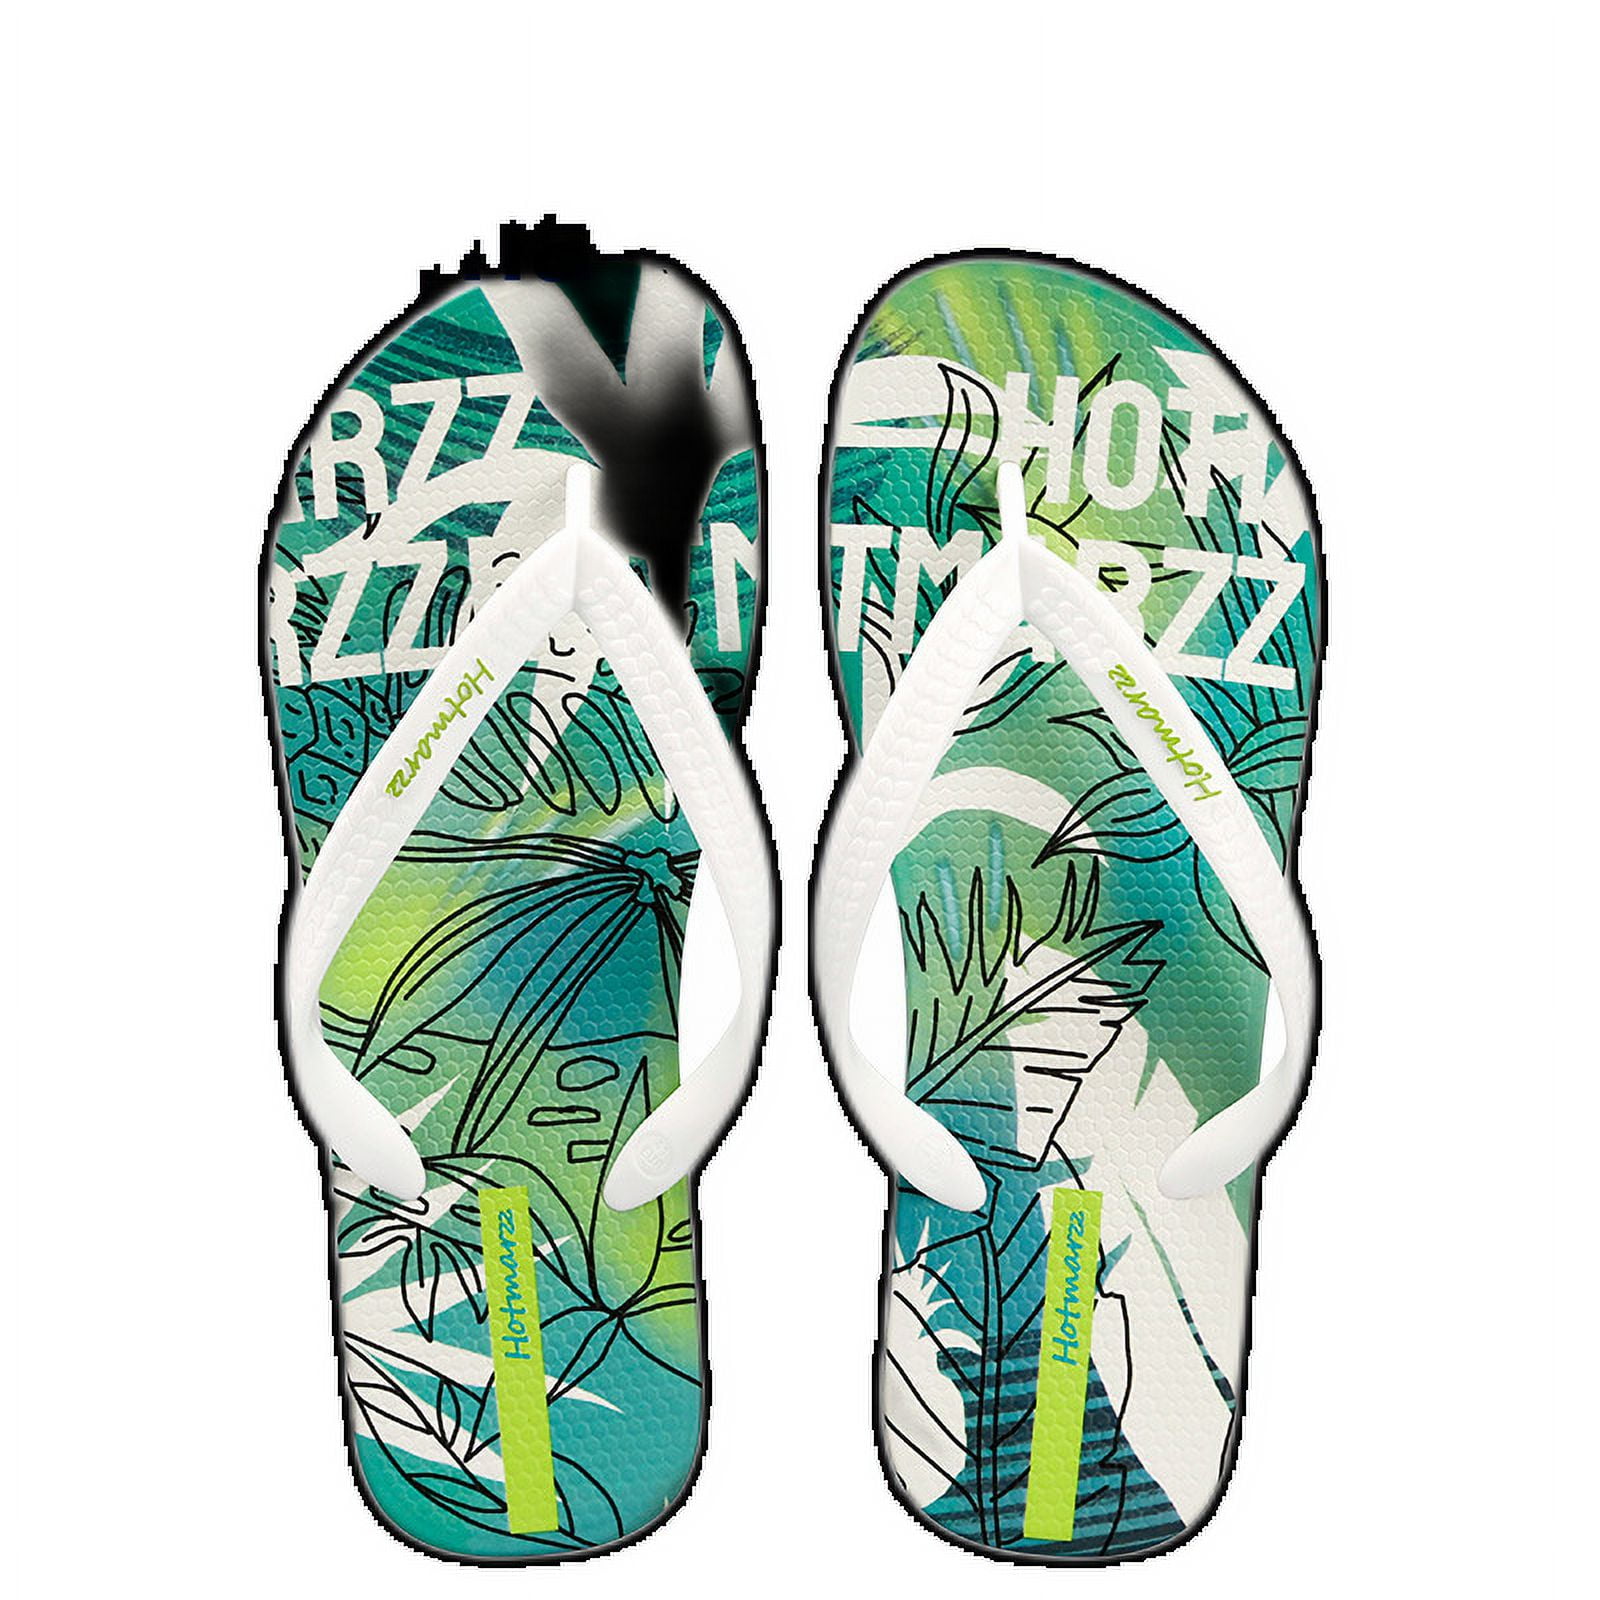 Hotmarzz Men'S Flip-Flops Tide Cool Outside Wear Shopping Slippers Home ...